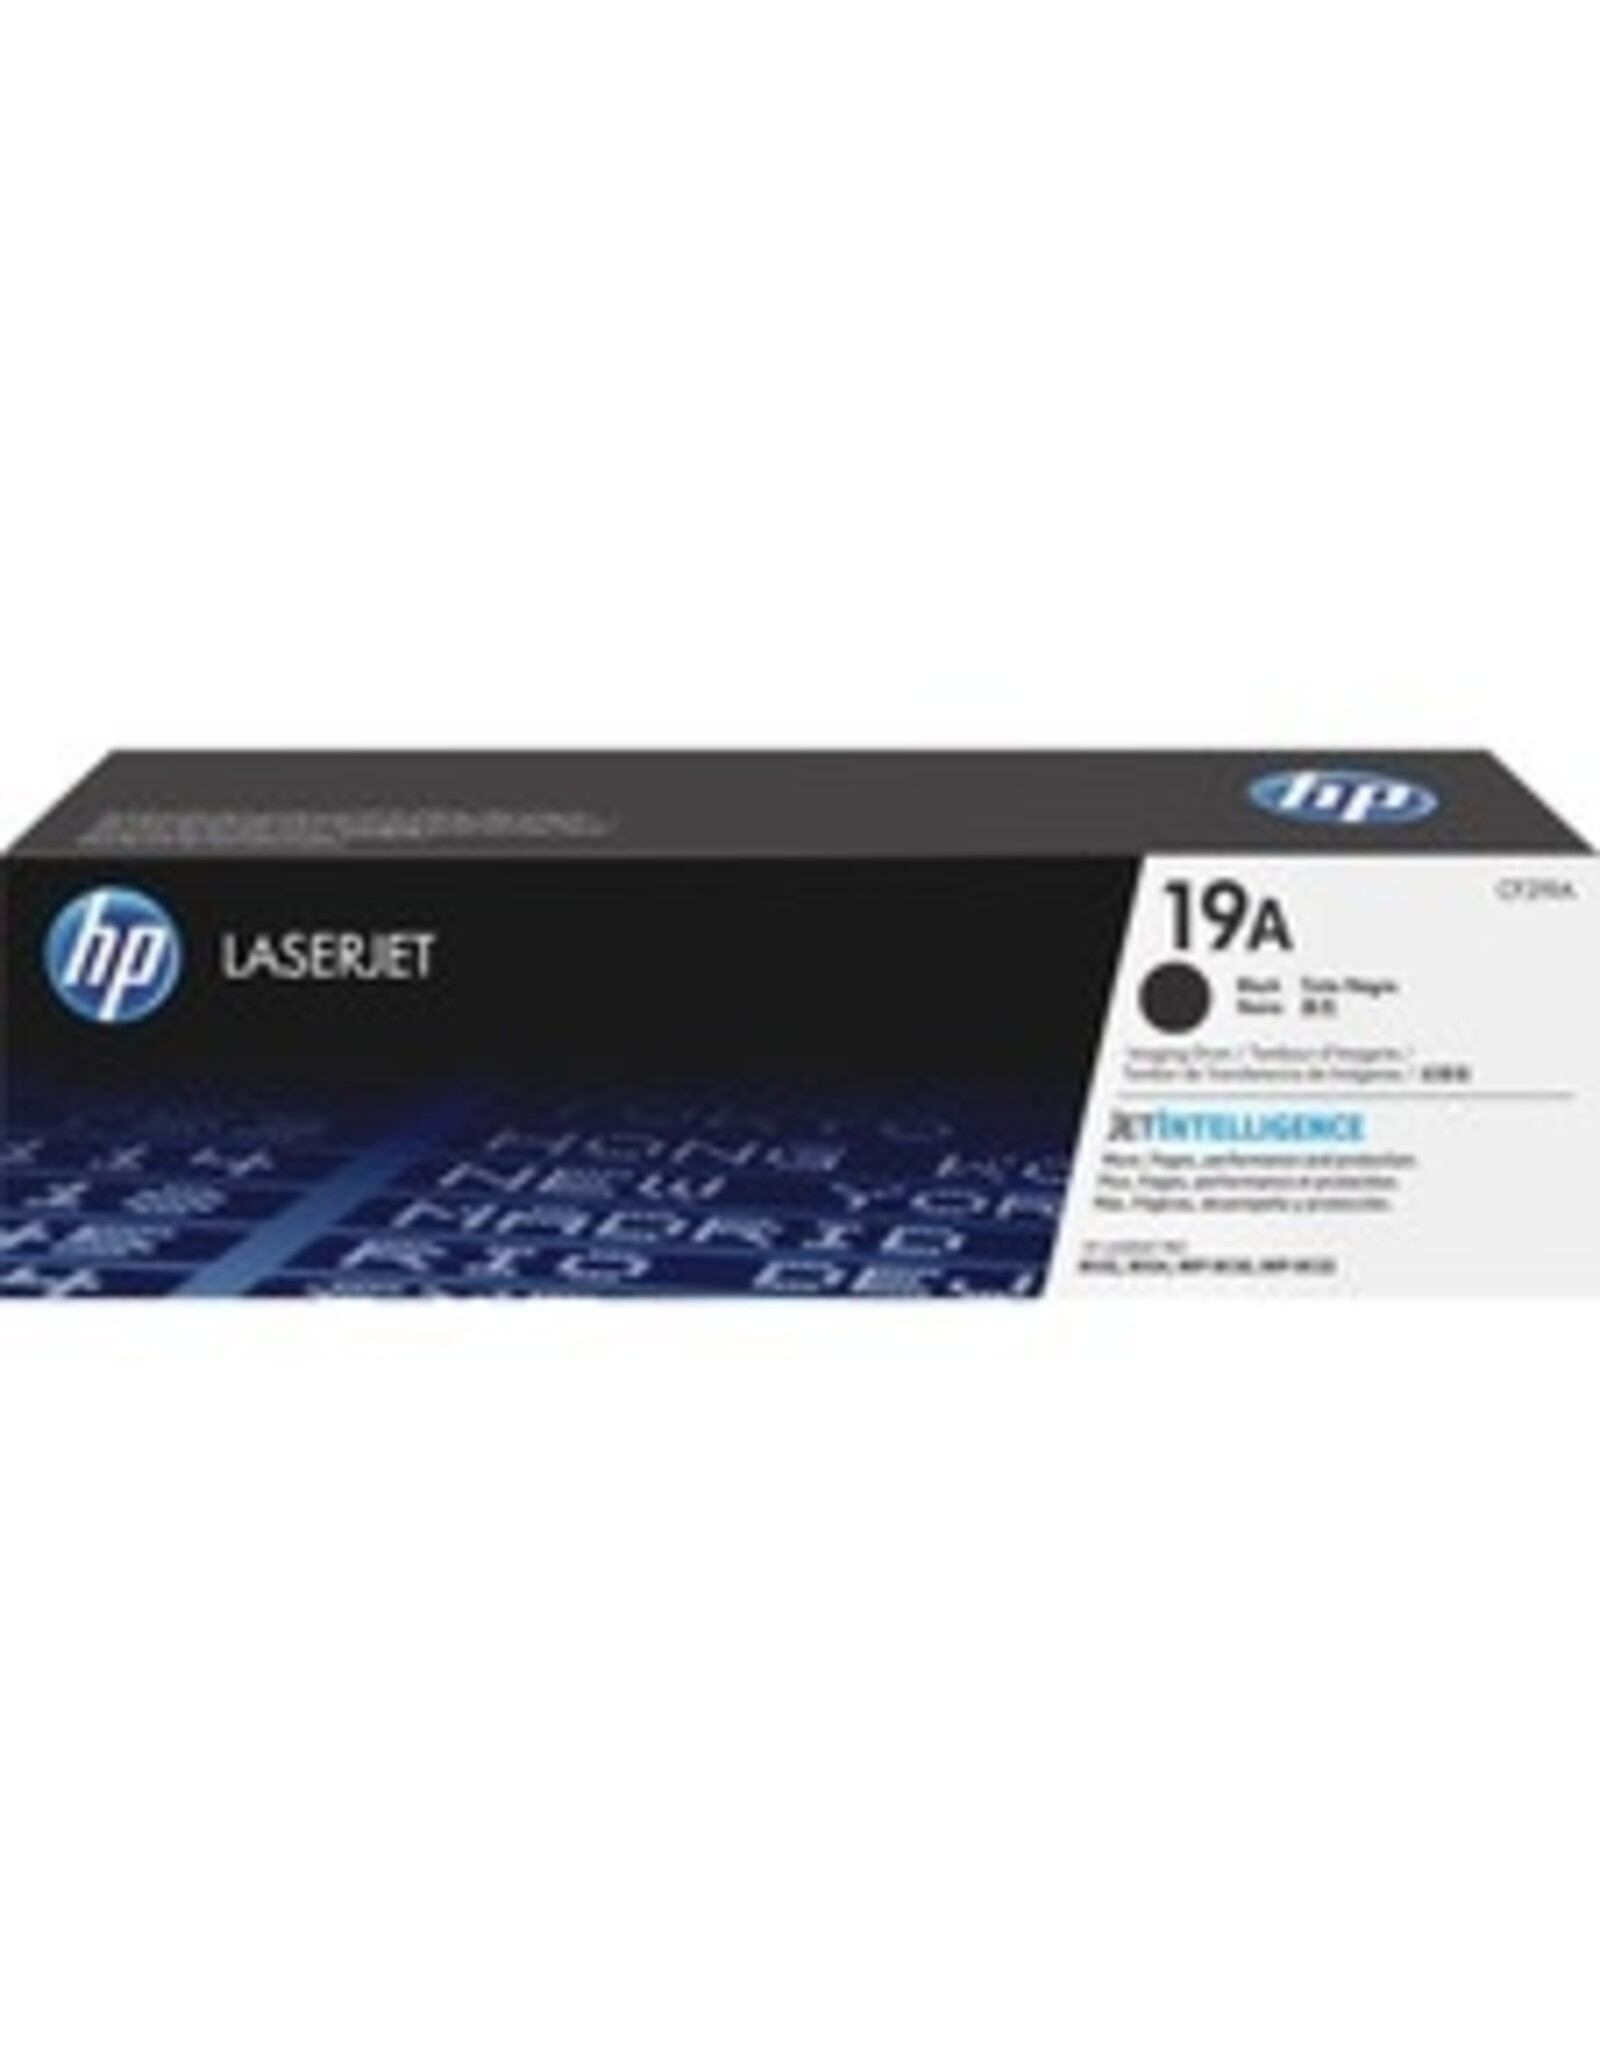 HP HP 19A Original LaserJet Imaging Drum - Single Pack